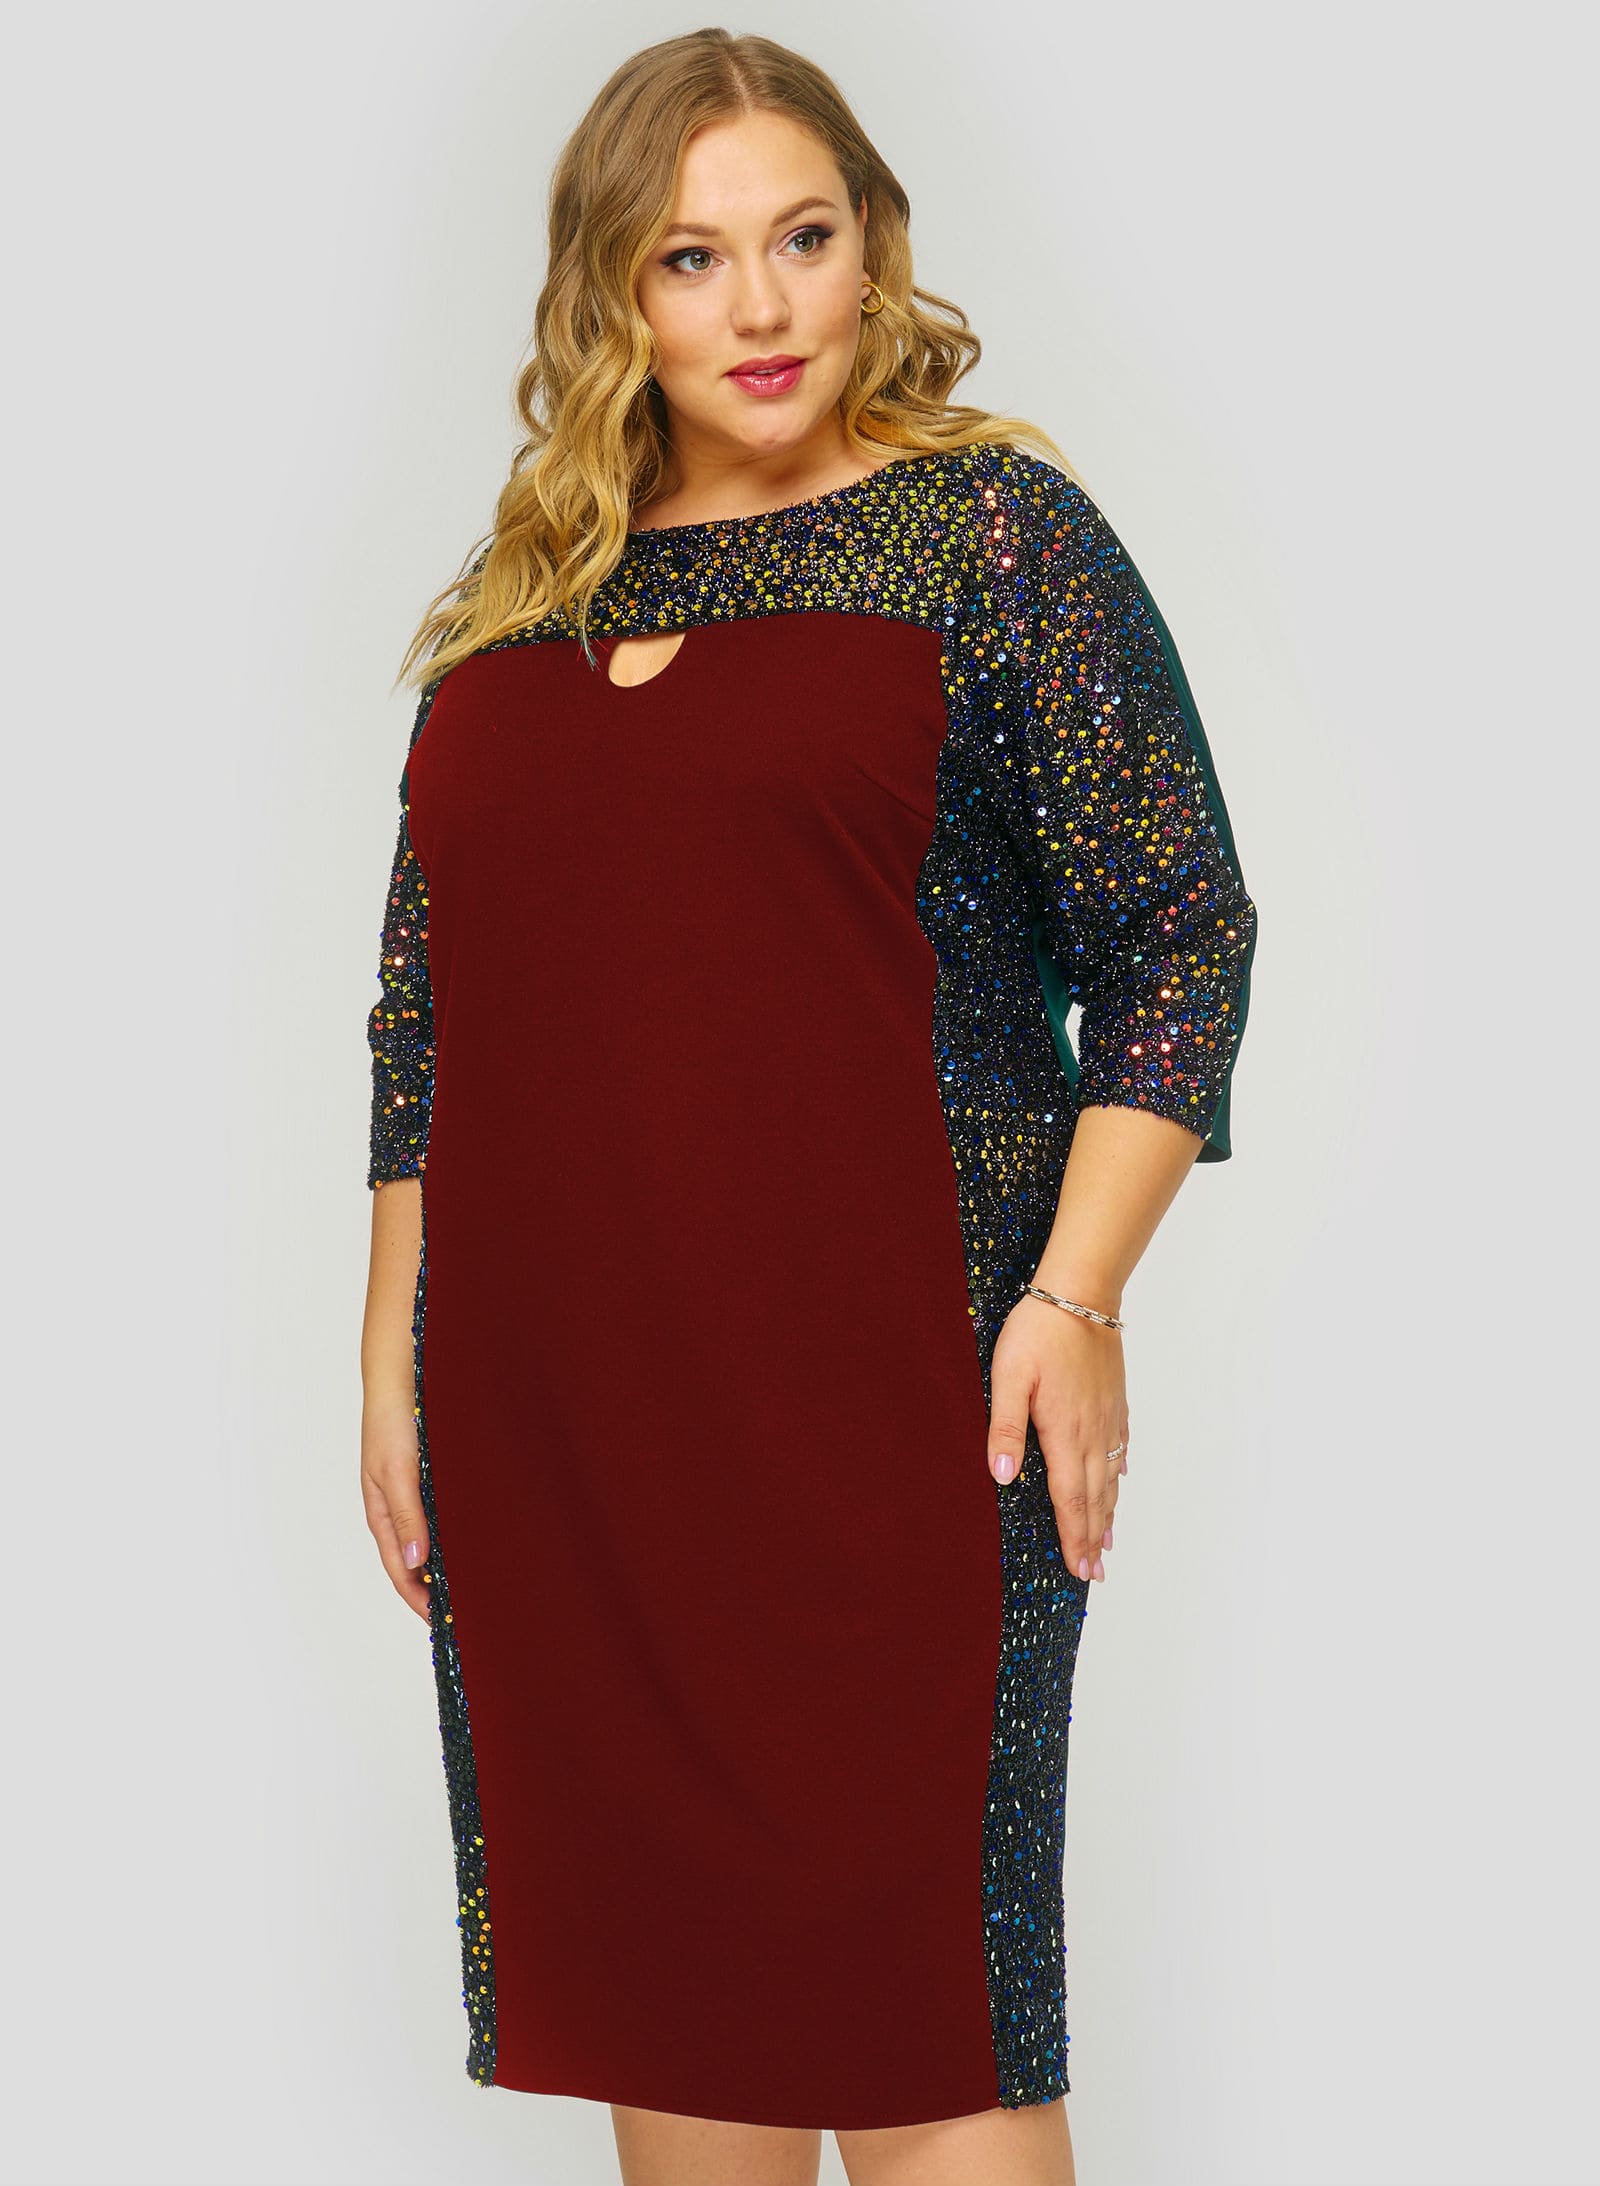 Приталенное платье с отделкой цветными пайетками, бордо